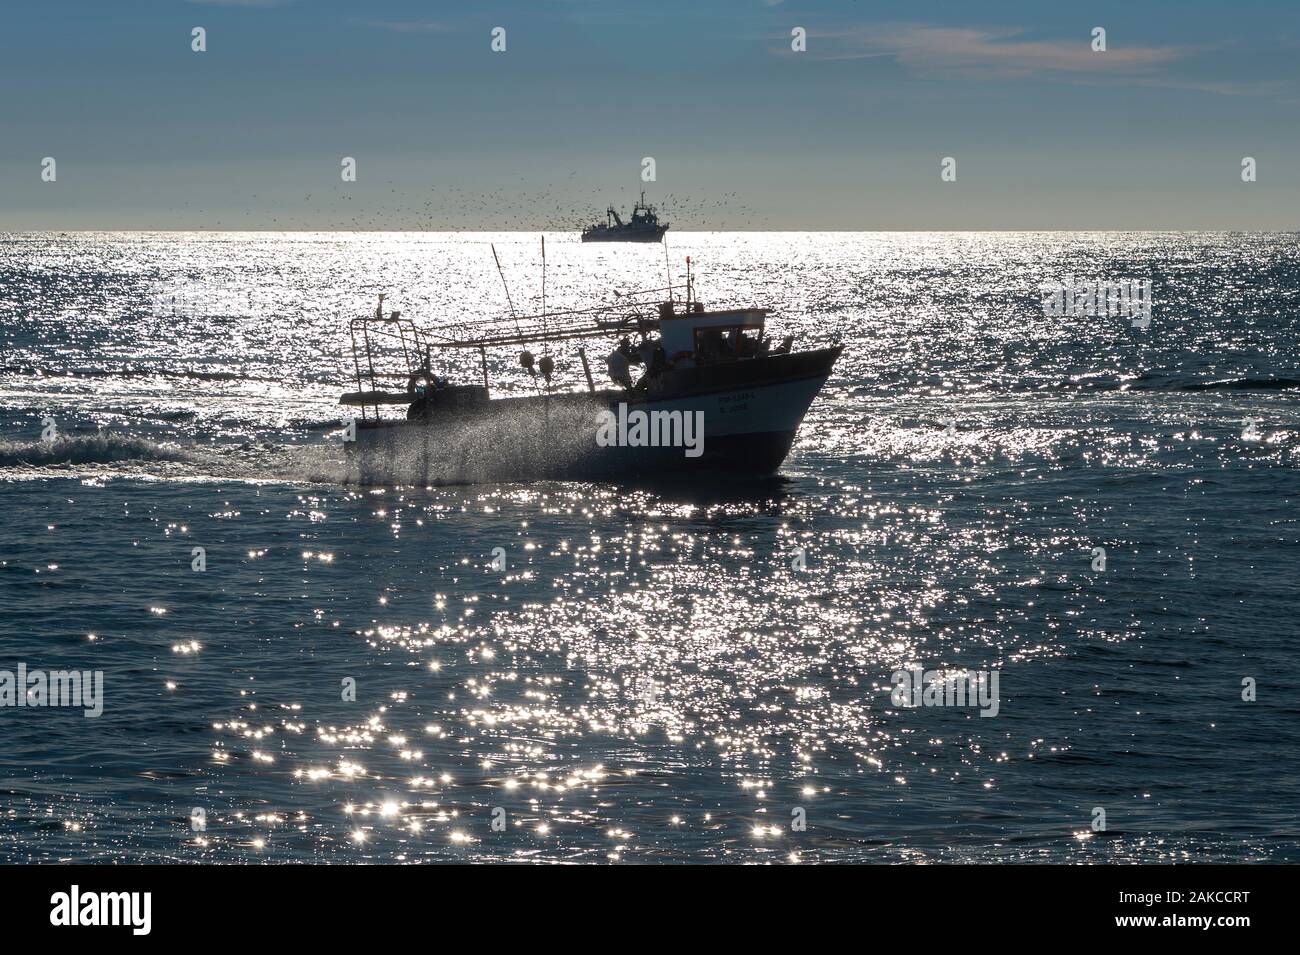 Les bateaux de pêche de retour à la maison avec une mer scintillante Banque D'Images